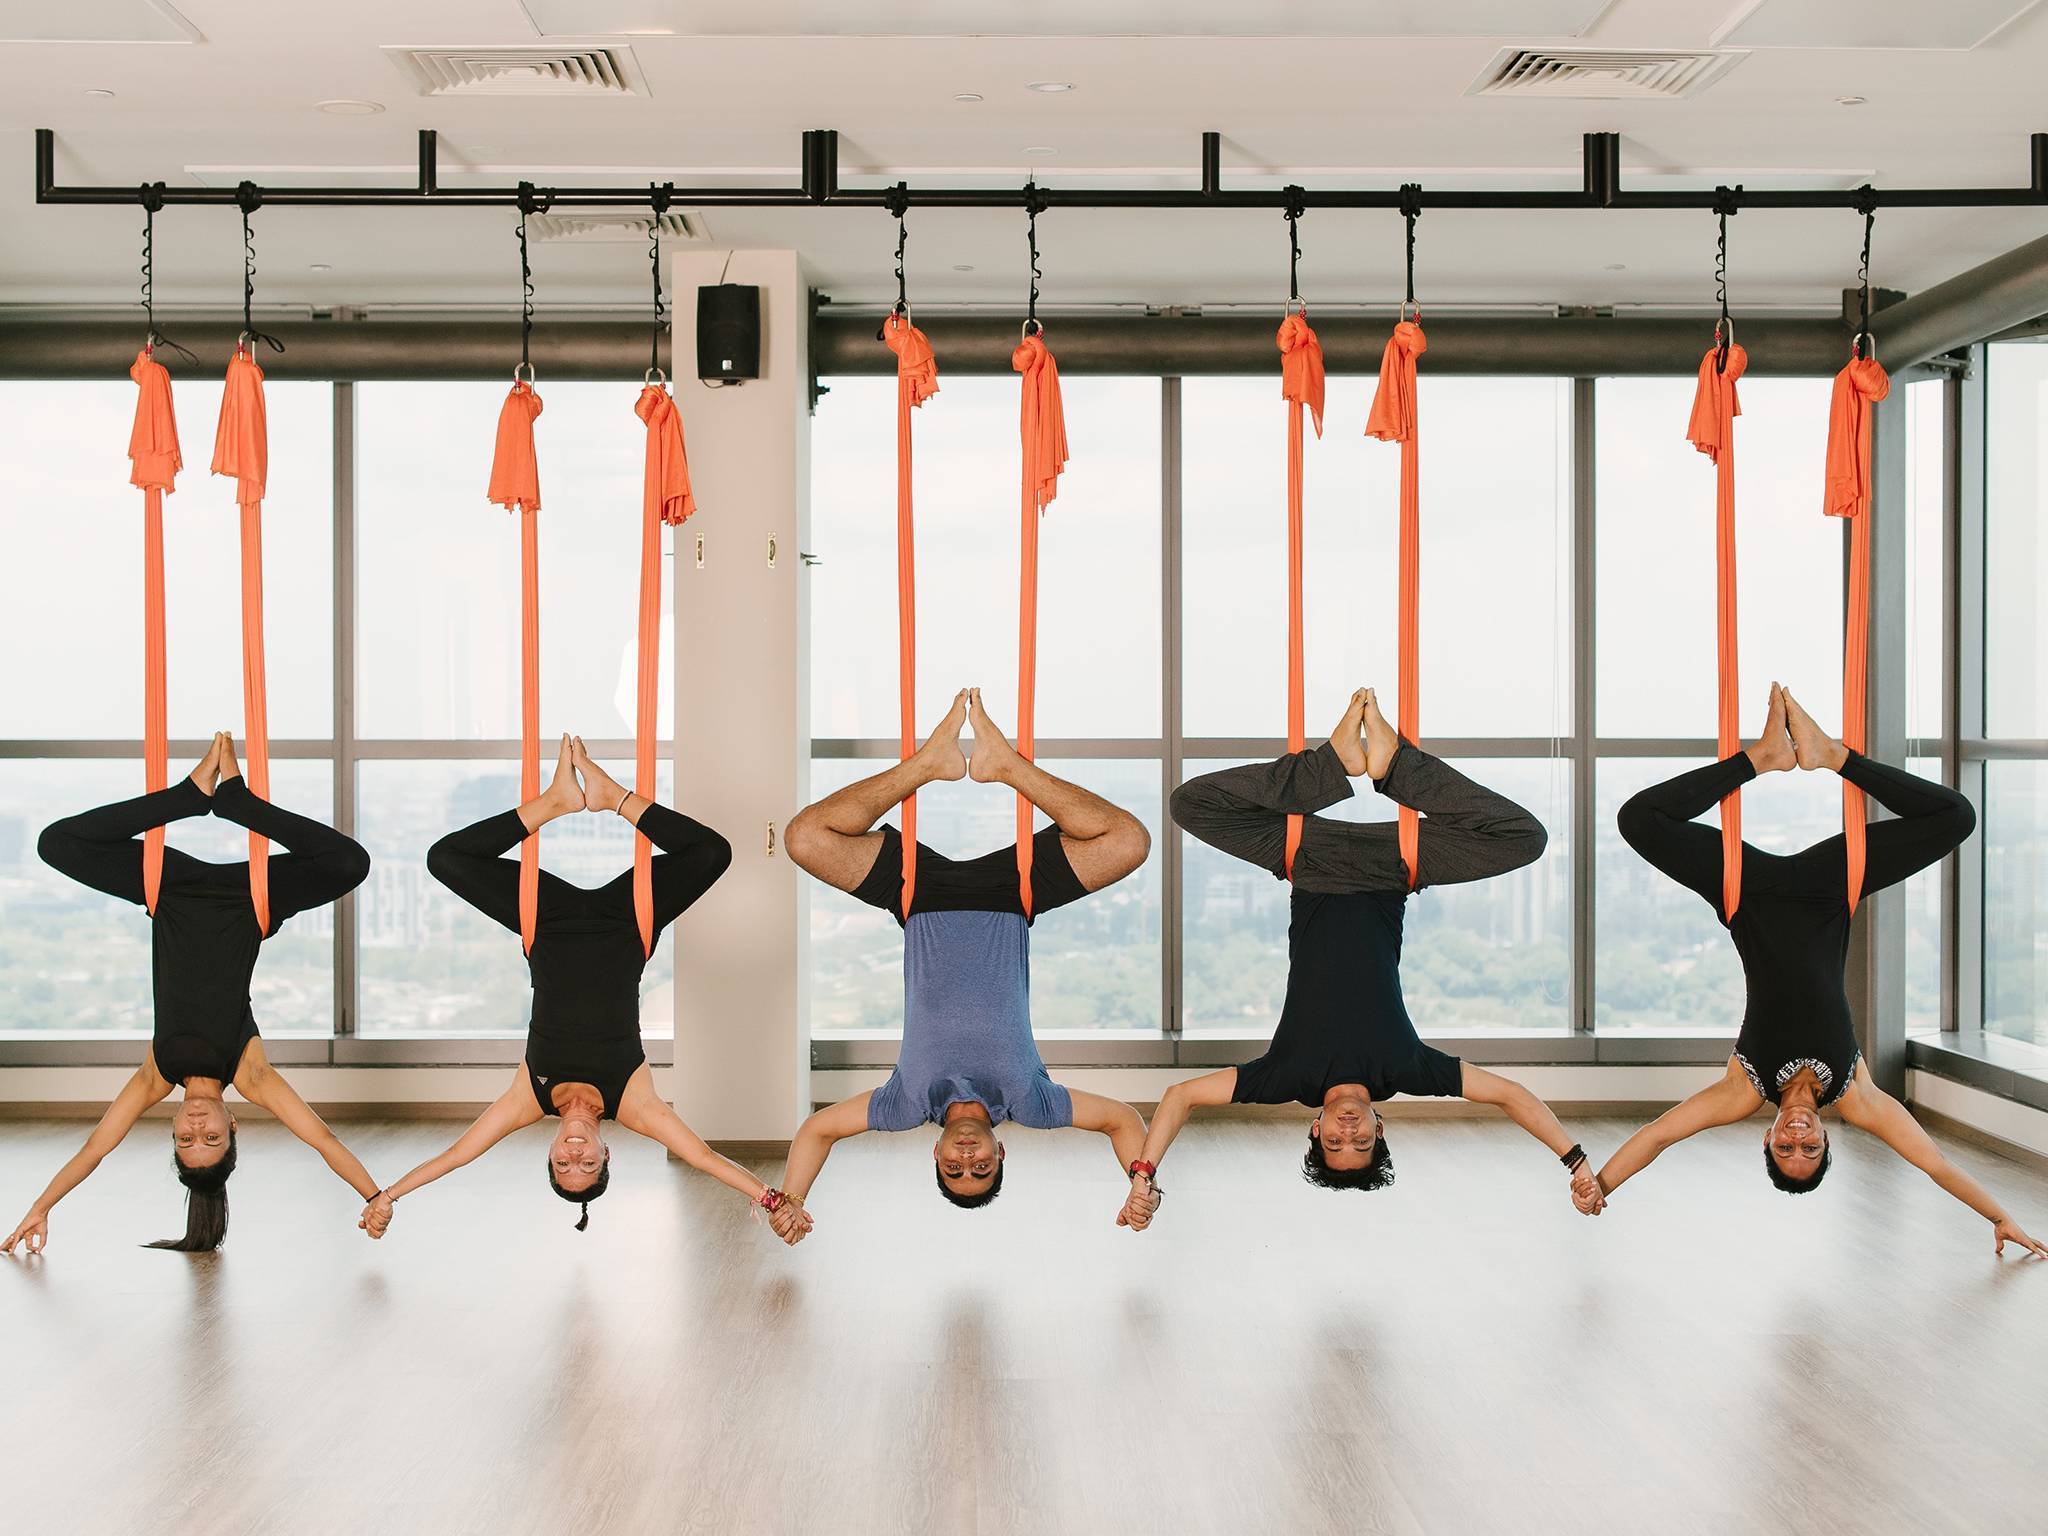 Йога в гамаках (aero yoga): польза, упражнения, отзывы (+5 видео)